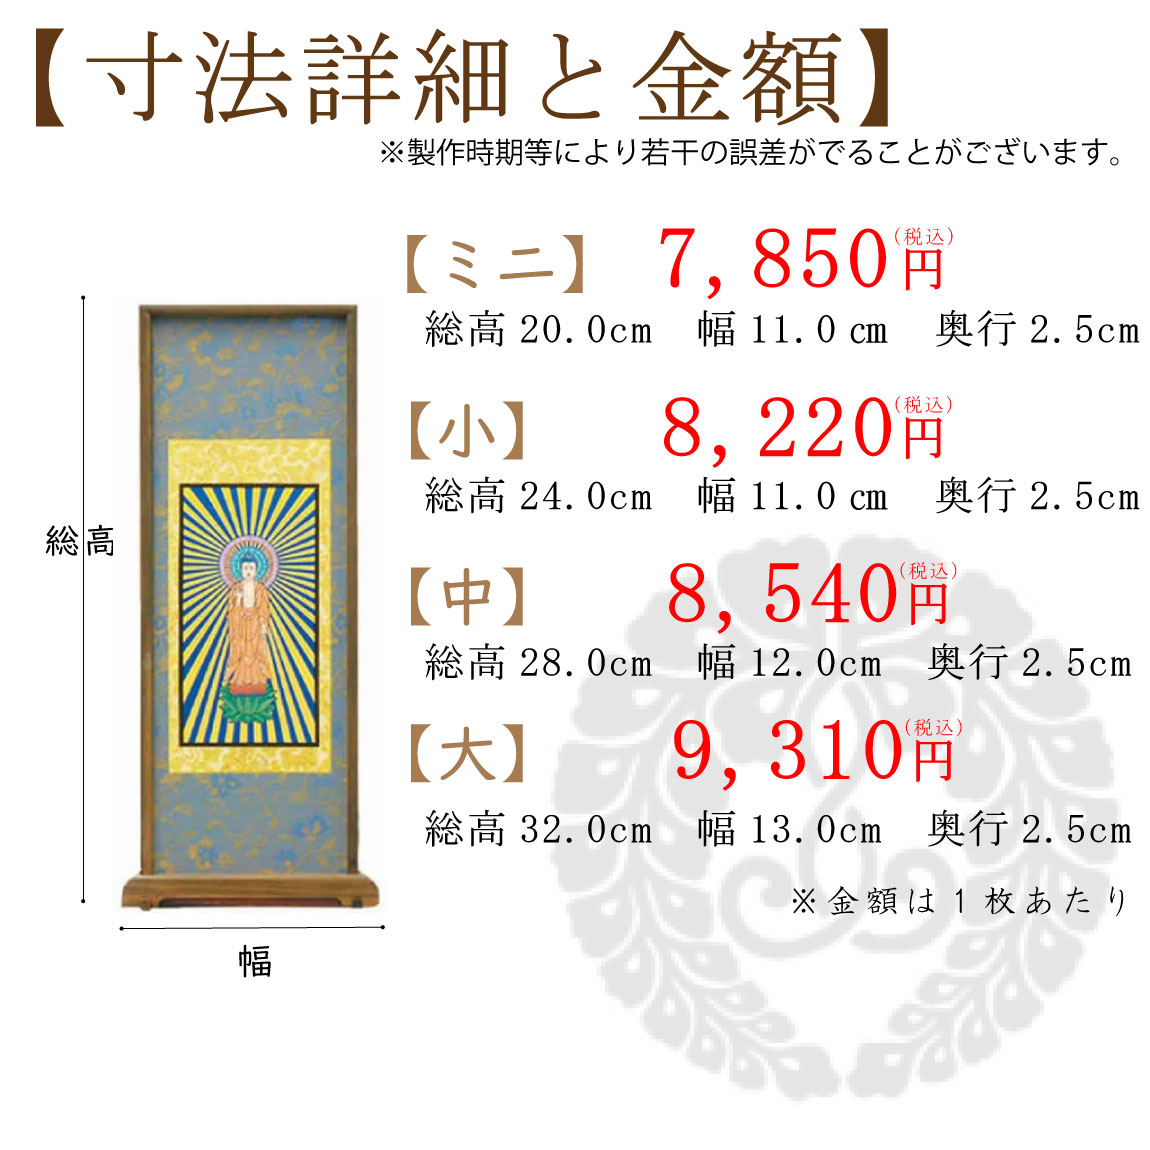 【高級素材】浄土真宗本願寺派のスタンド式掛け軸のサイズと価格